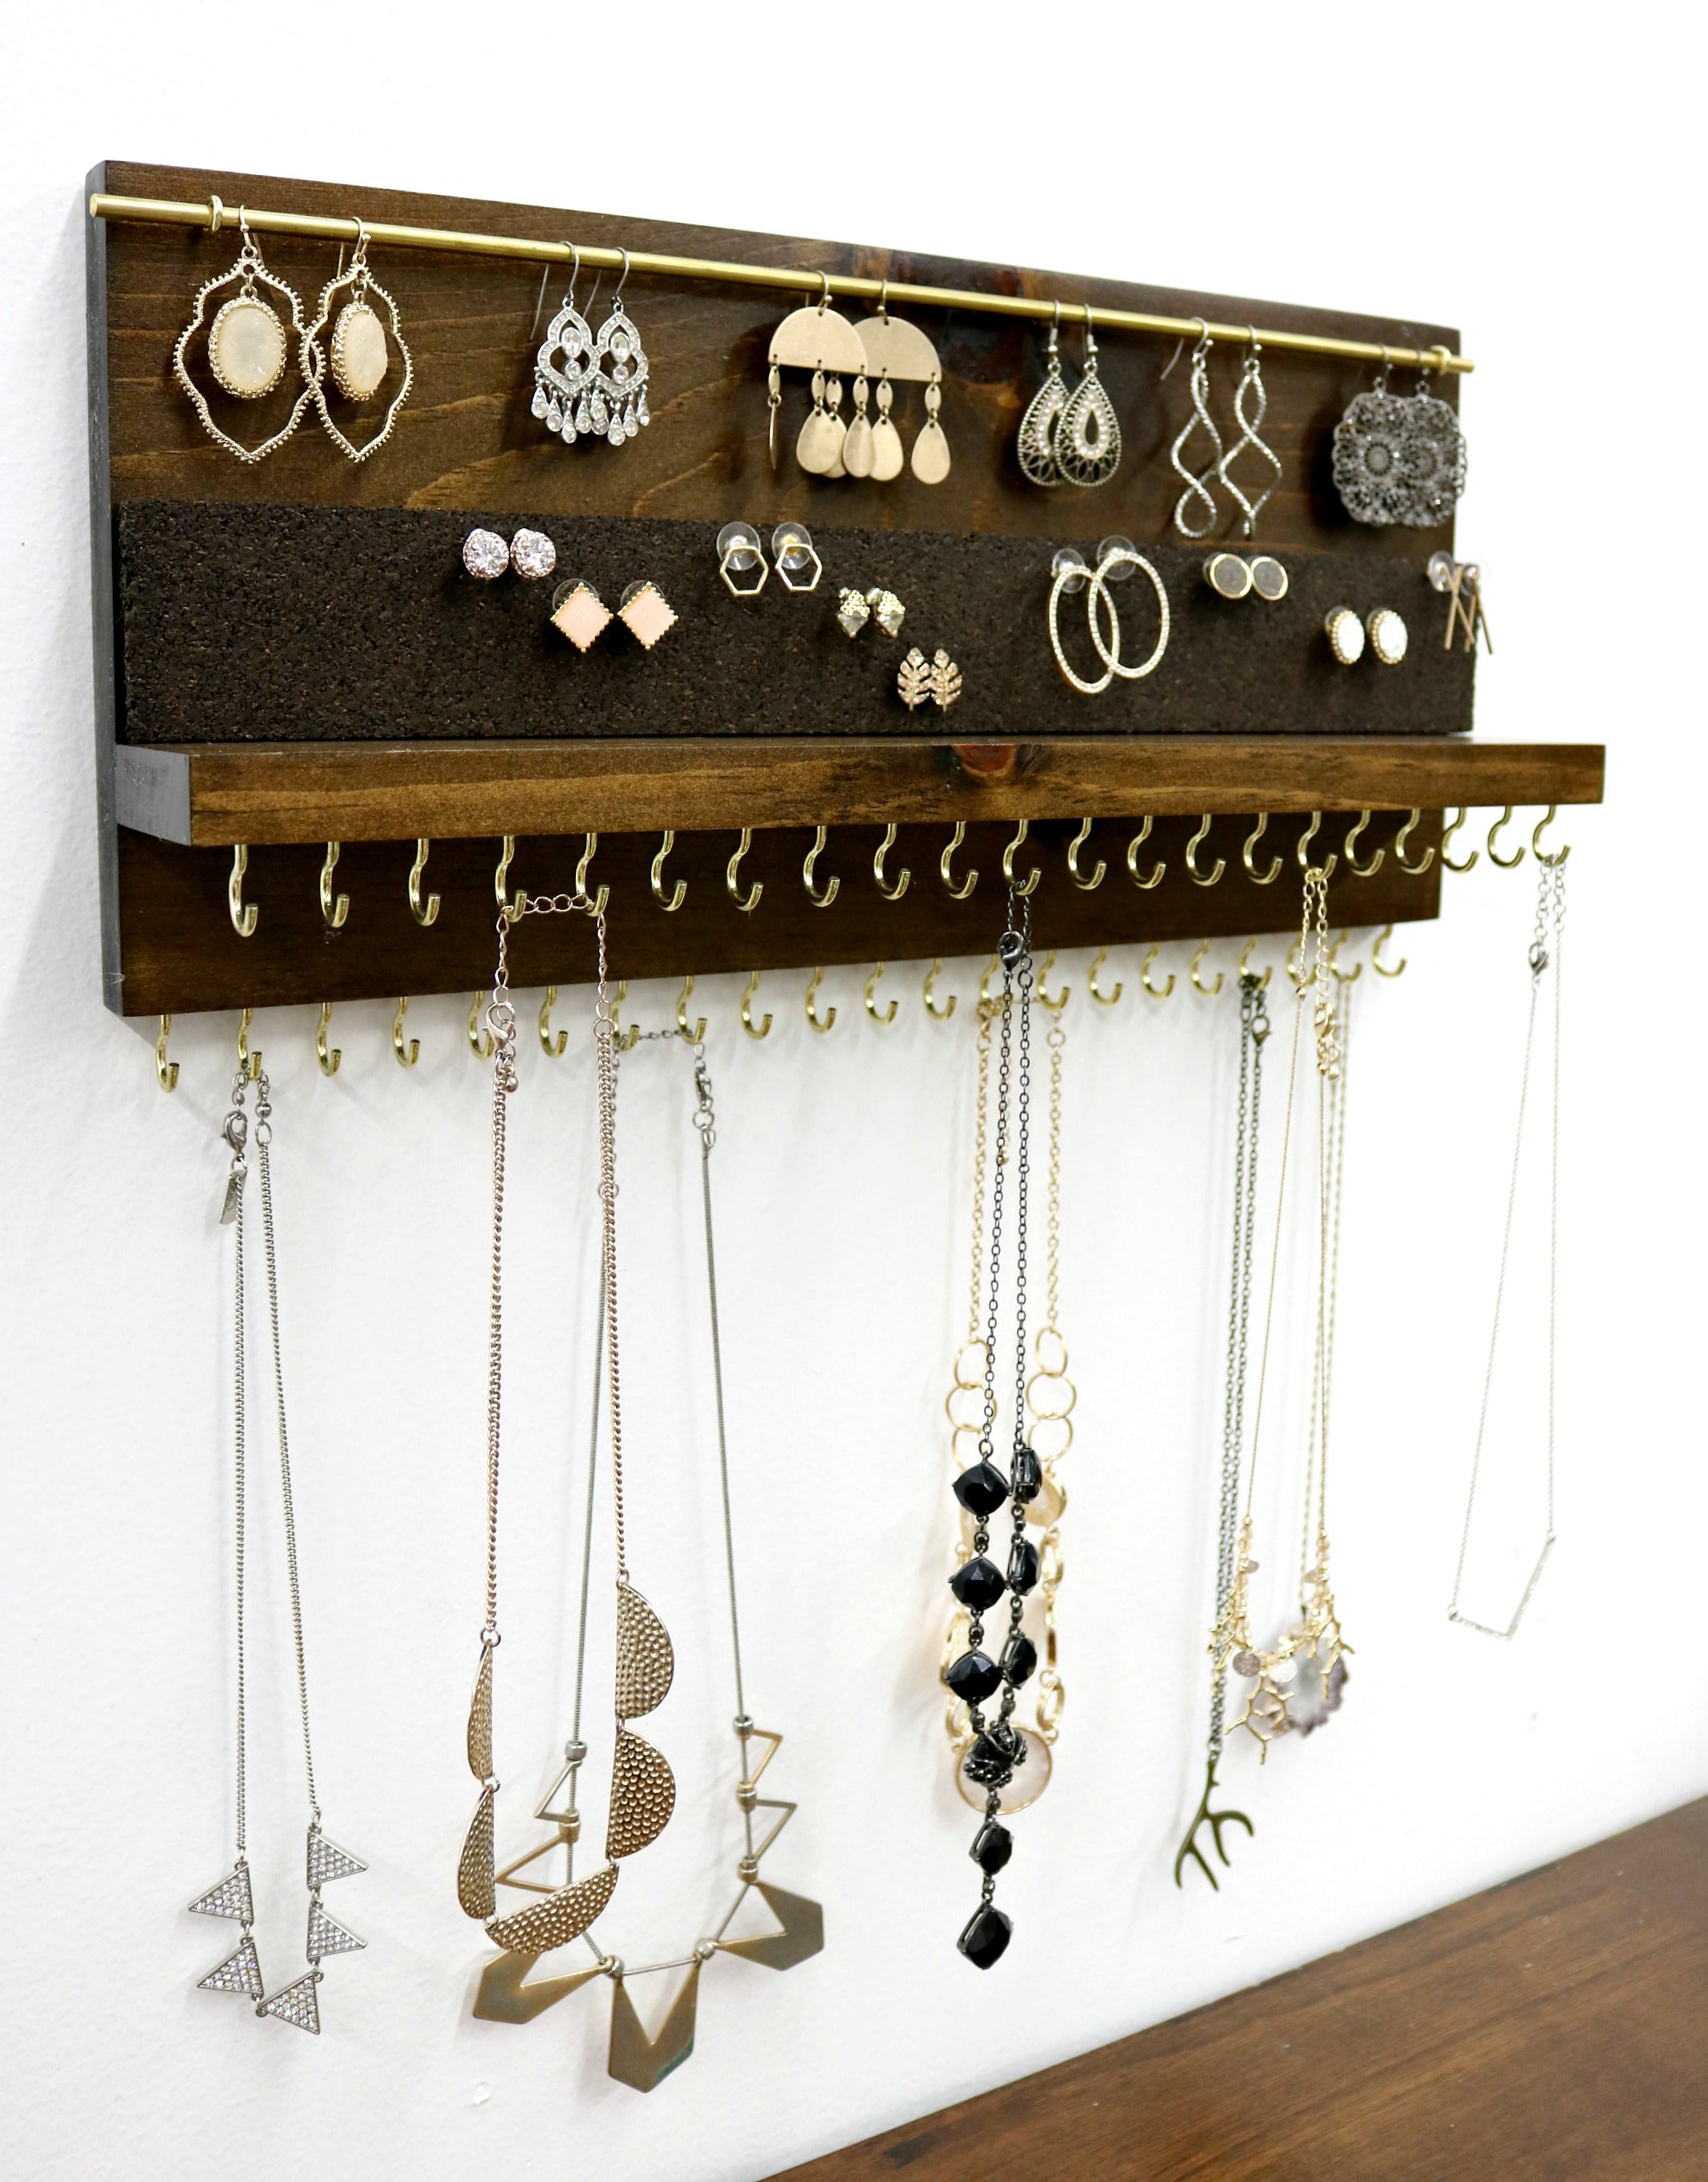 Wall Mount Jewelry Organizer with Shelf